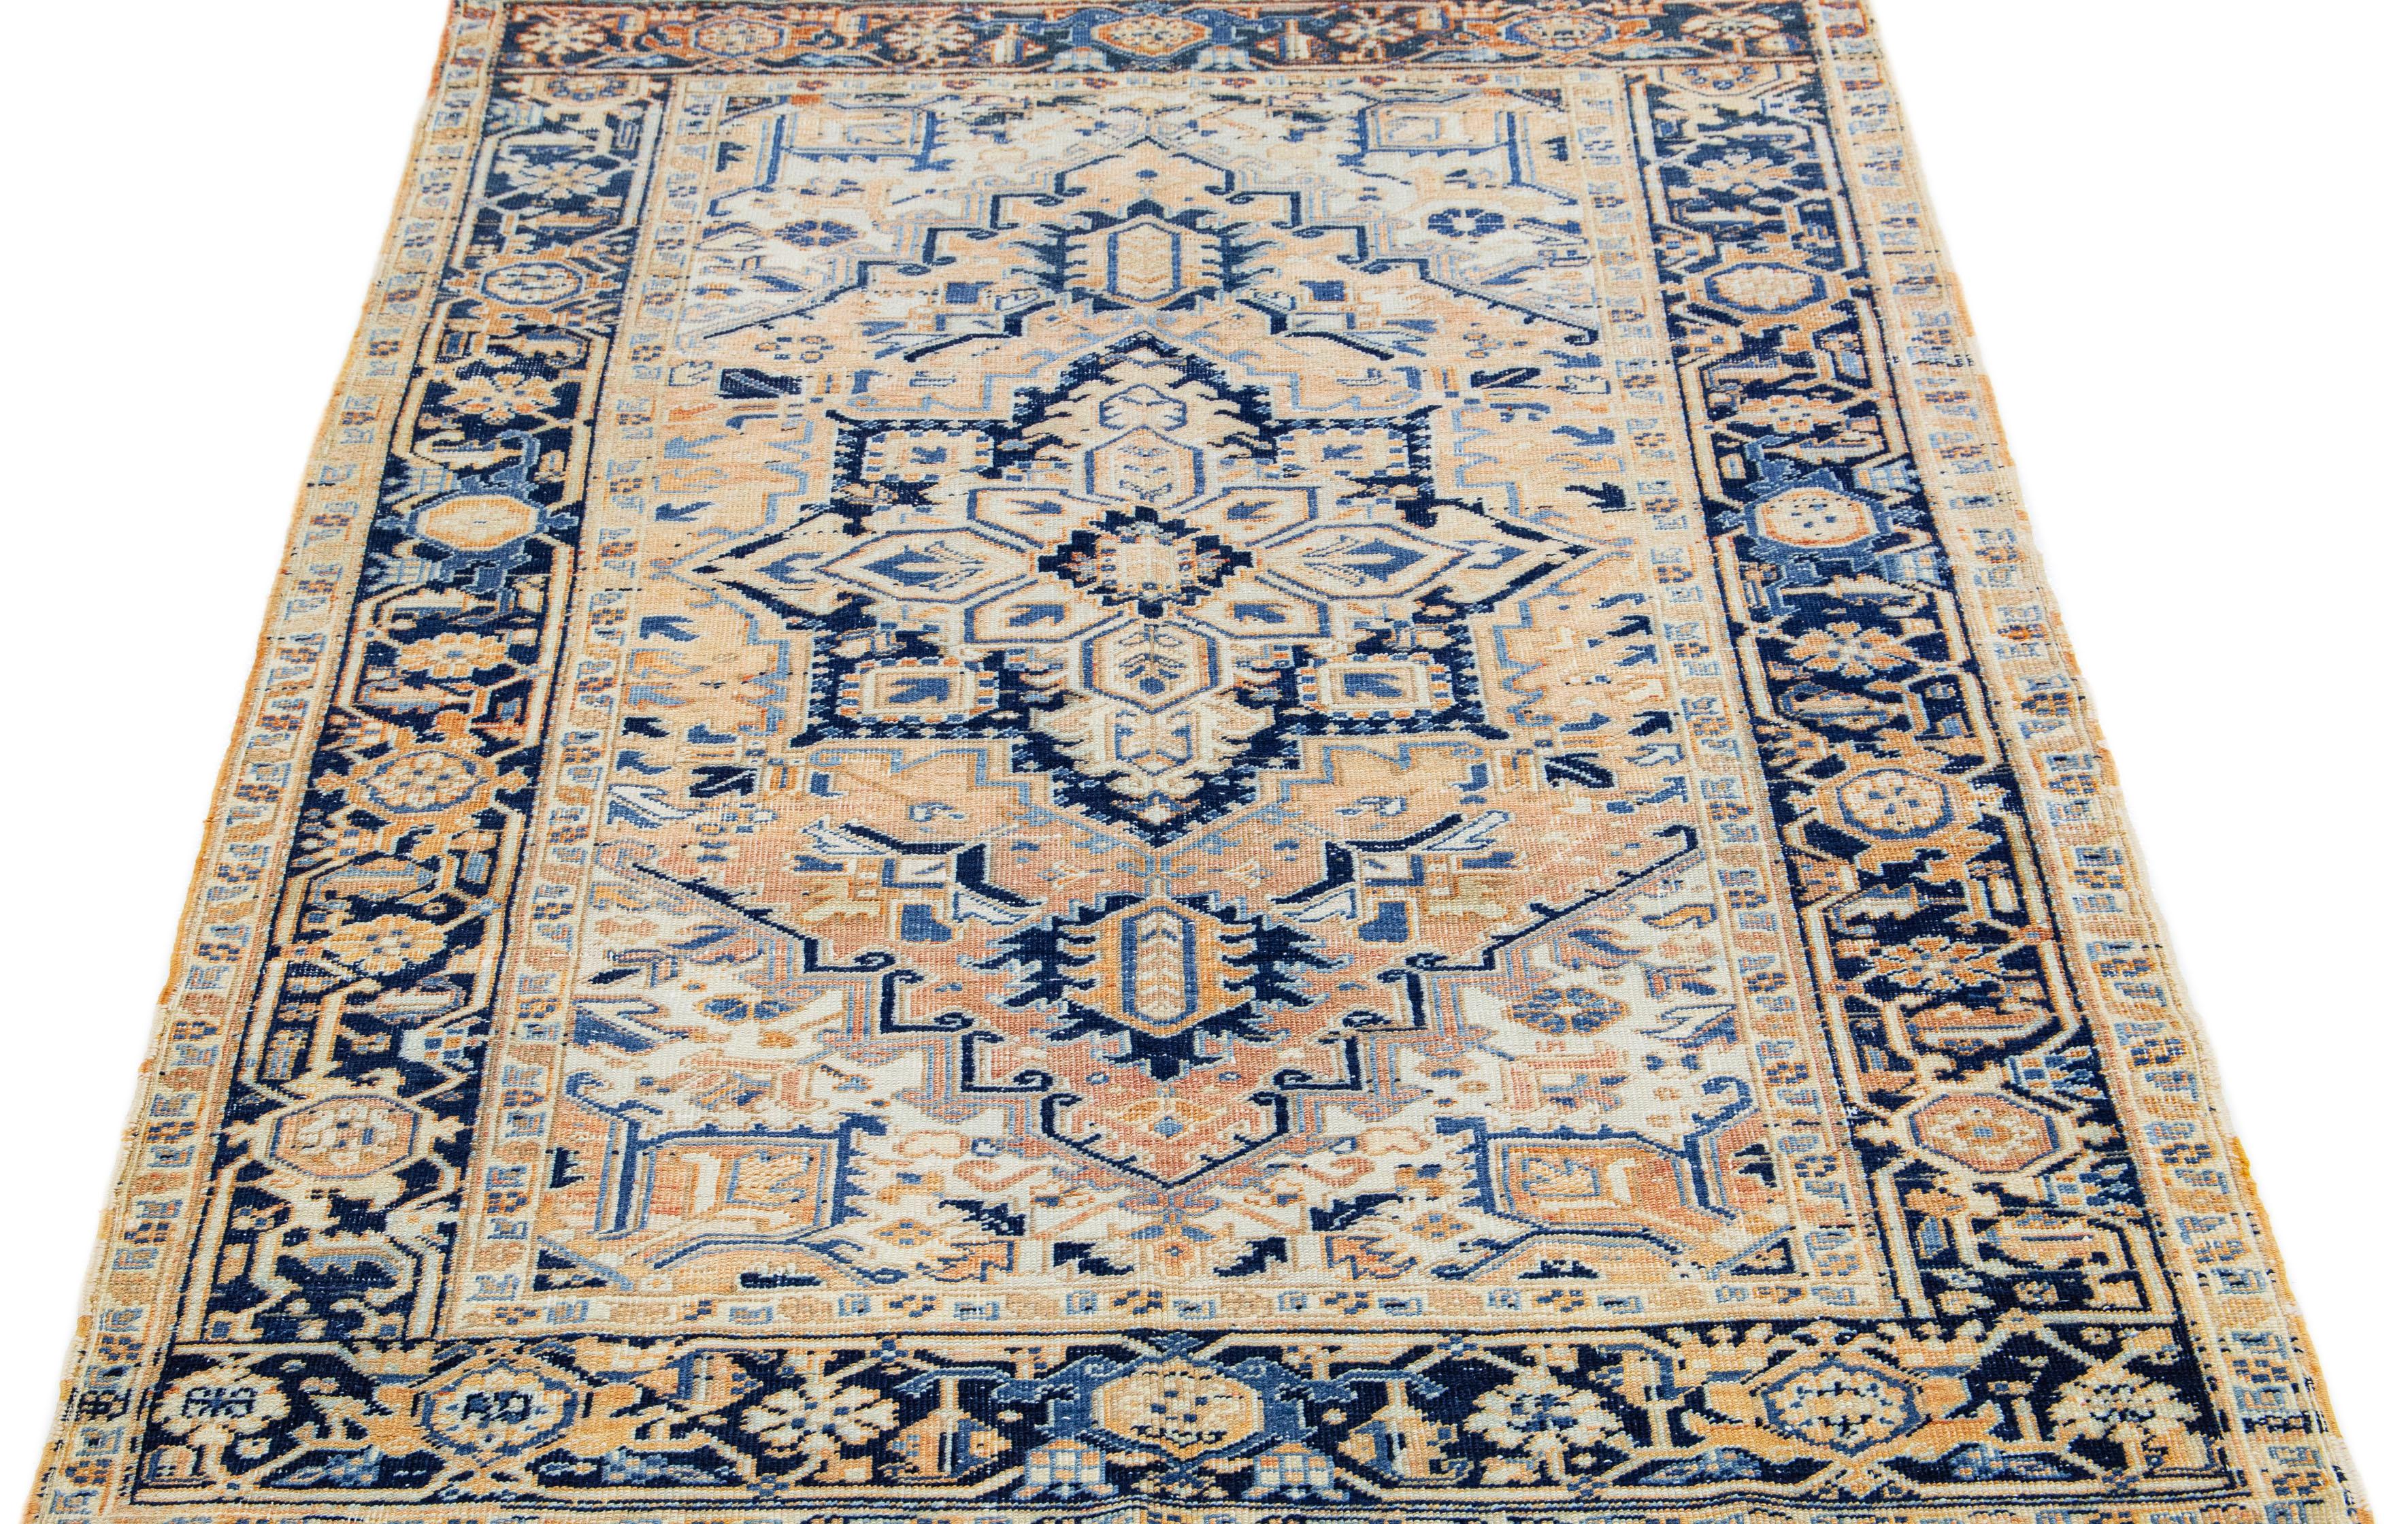 Die hochwertige, handgeknüpfte Wolle des antiken Heriz-Teppichs und das markante Medaillon-Design strahlen zeitlose Eleganz und Raffinesse aus. Das komplizierte geometrische Blumenmuster in Blau- und Orangetönen verleiht dem zarten pfirsichfarbenen